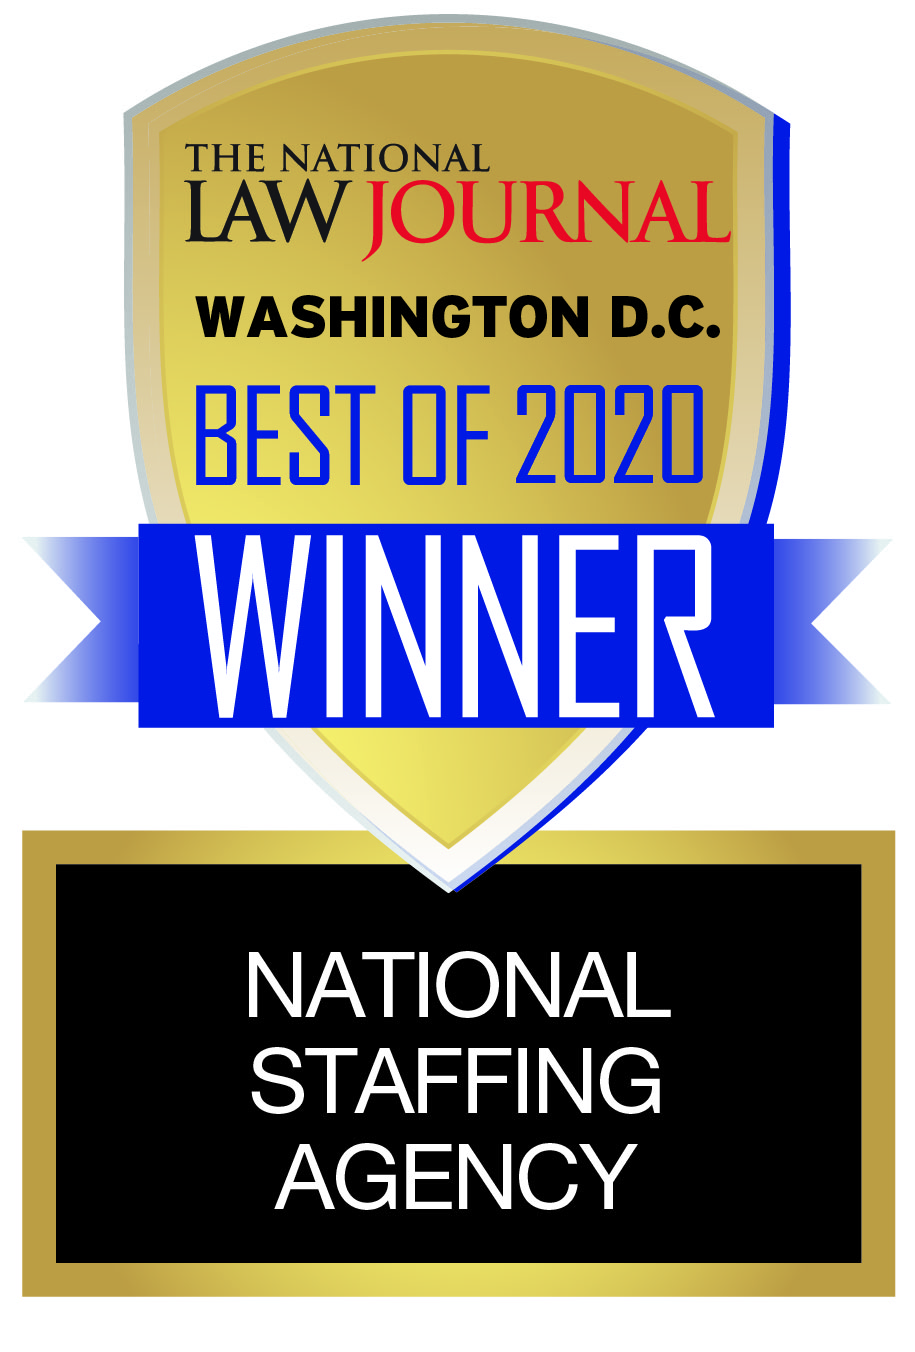 Washington DC Law Journal Best of 2020 Winner